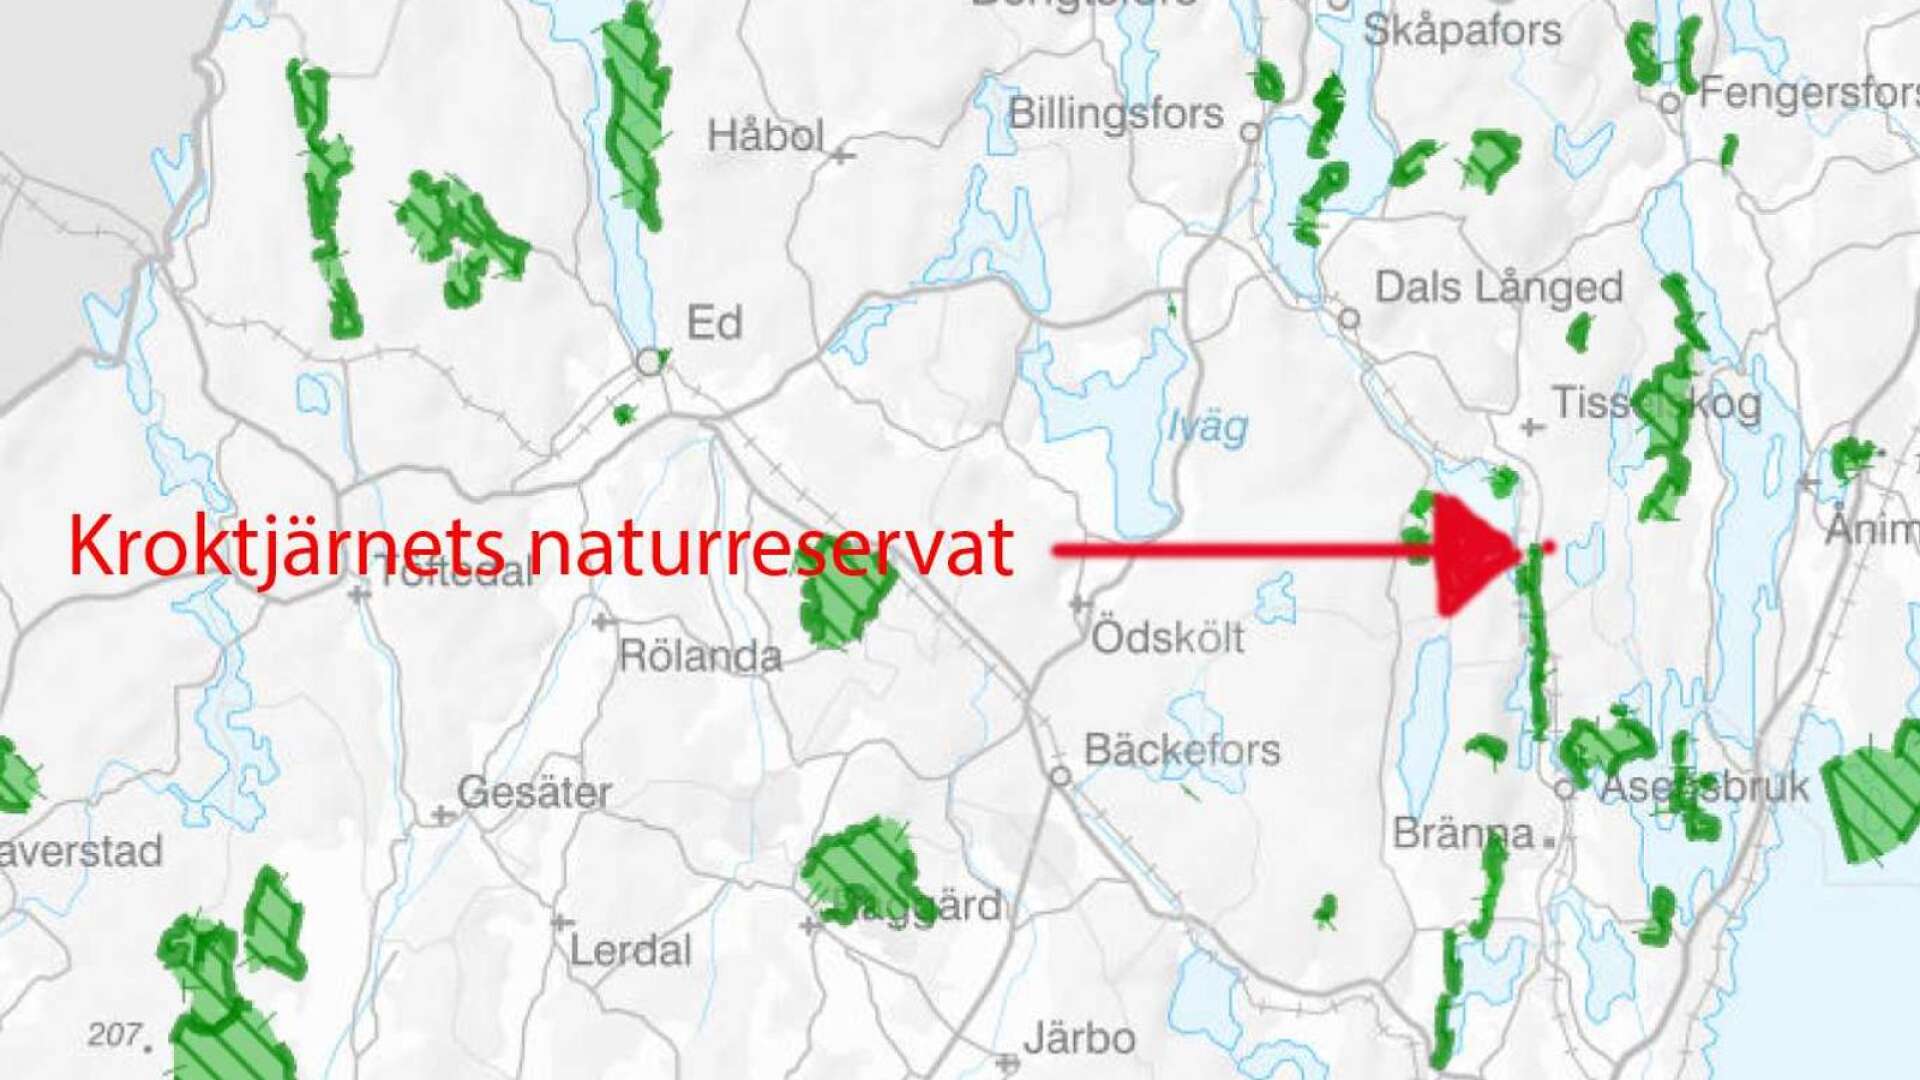 Nya Kroktjärnets naturreservat (röda pricken på kartan) ligger strax norr om Buteruds naturreservat som ligger i både  Bengtsfors och Melleruds kommun.